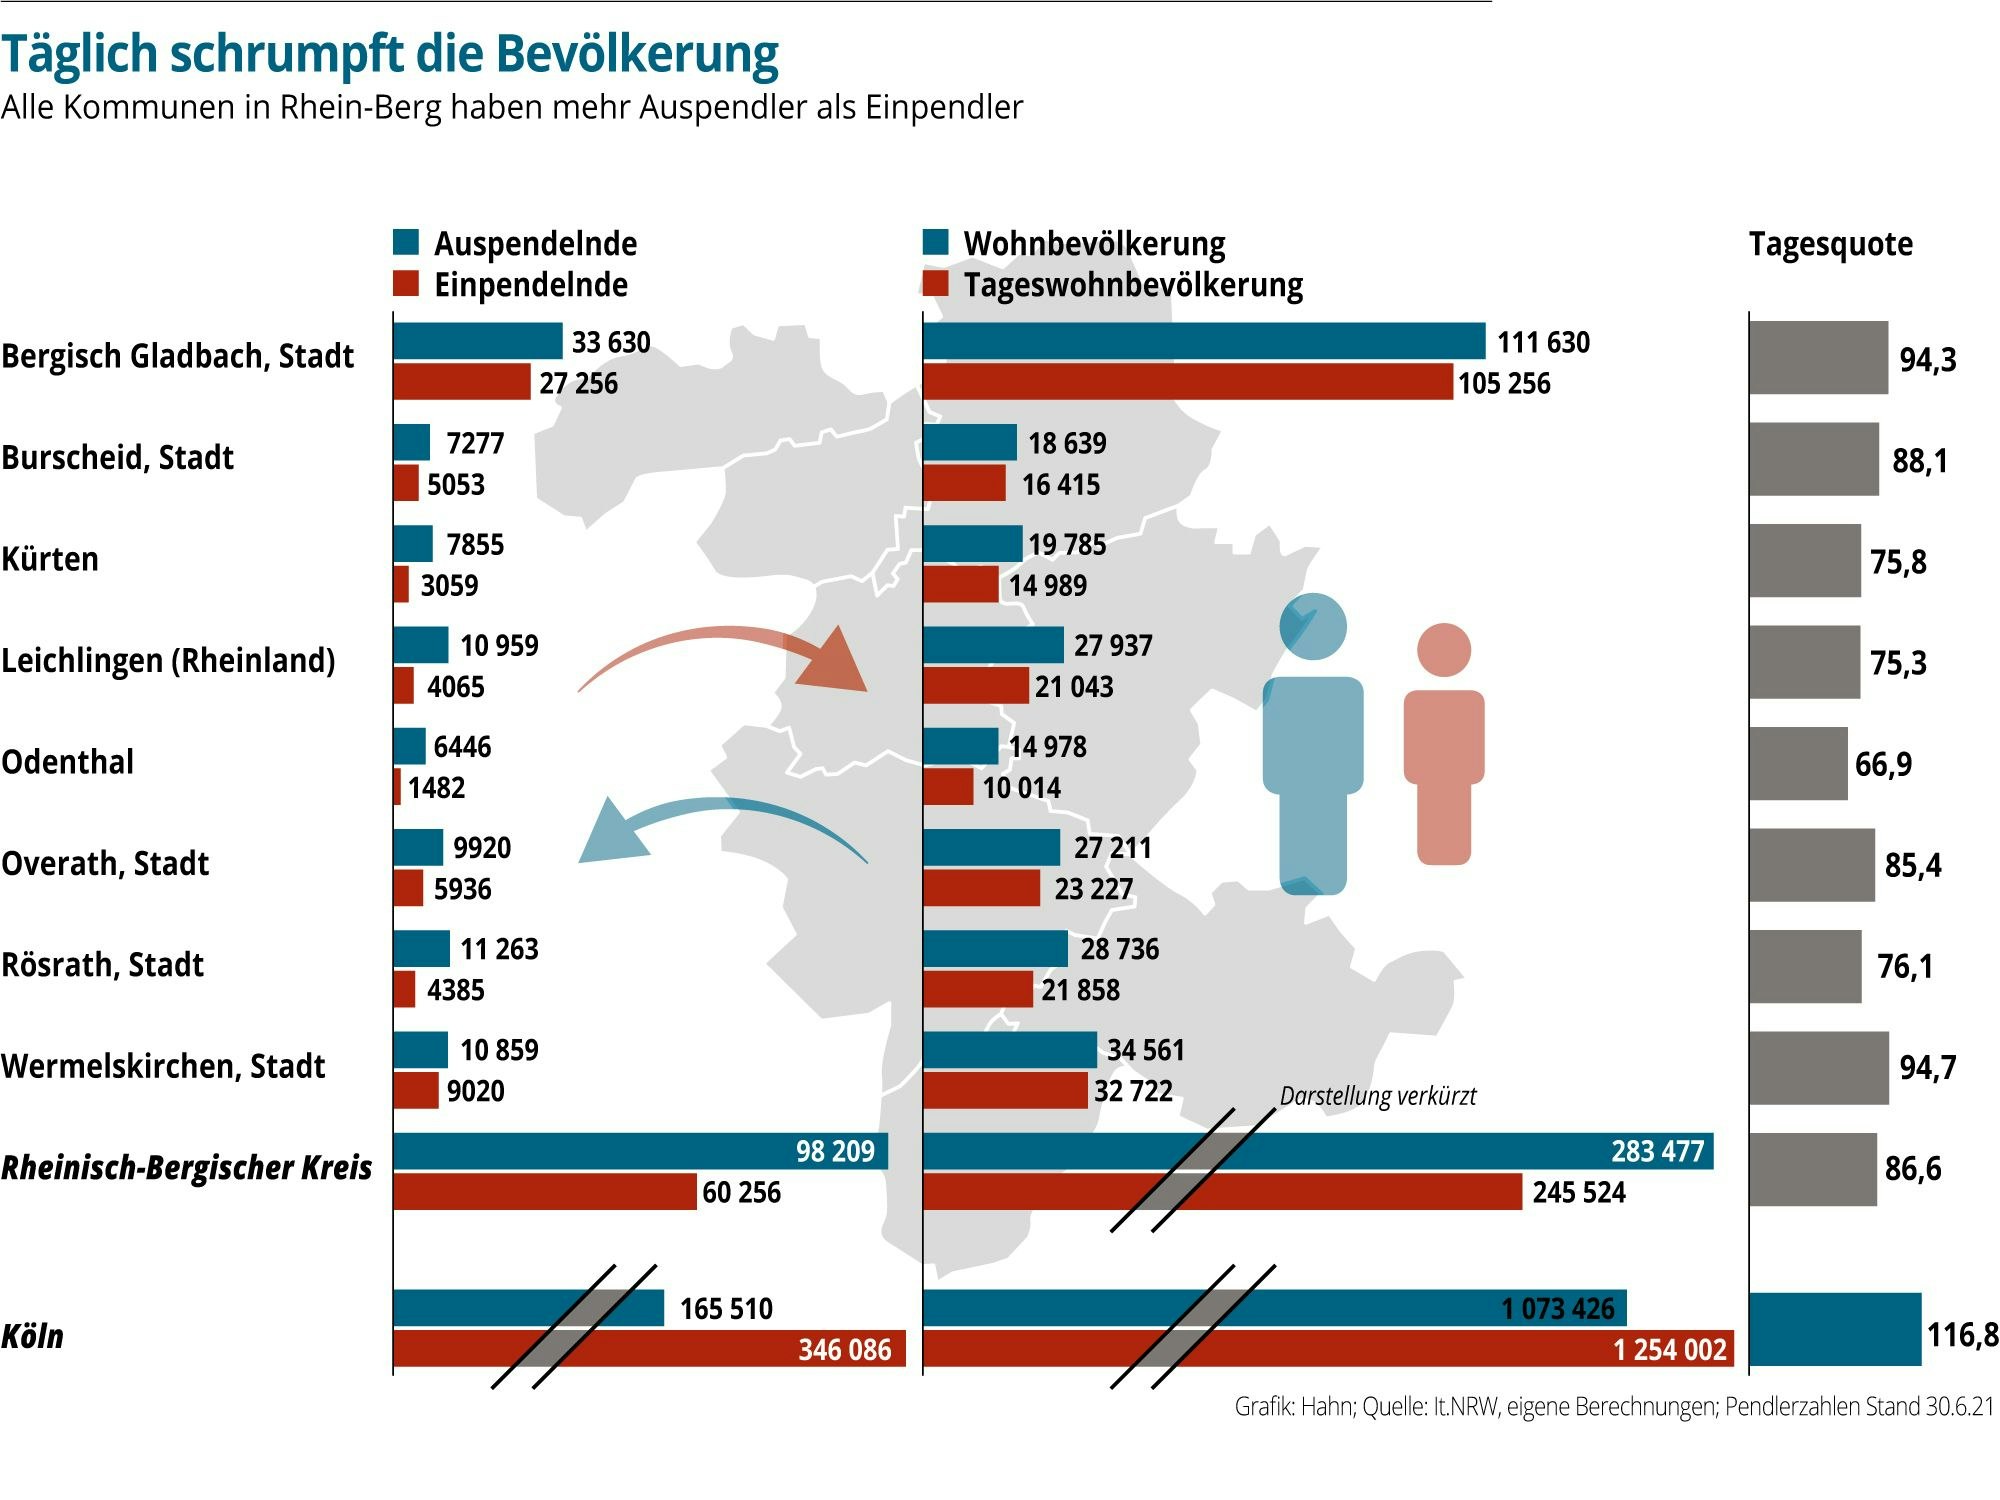 Eine Grafik zeigt an, wie viele Menschen in Rheion-Berg Aus- und Einpendeln.